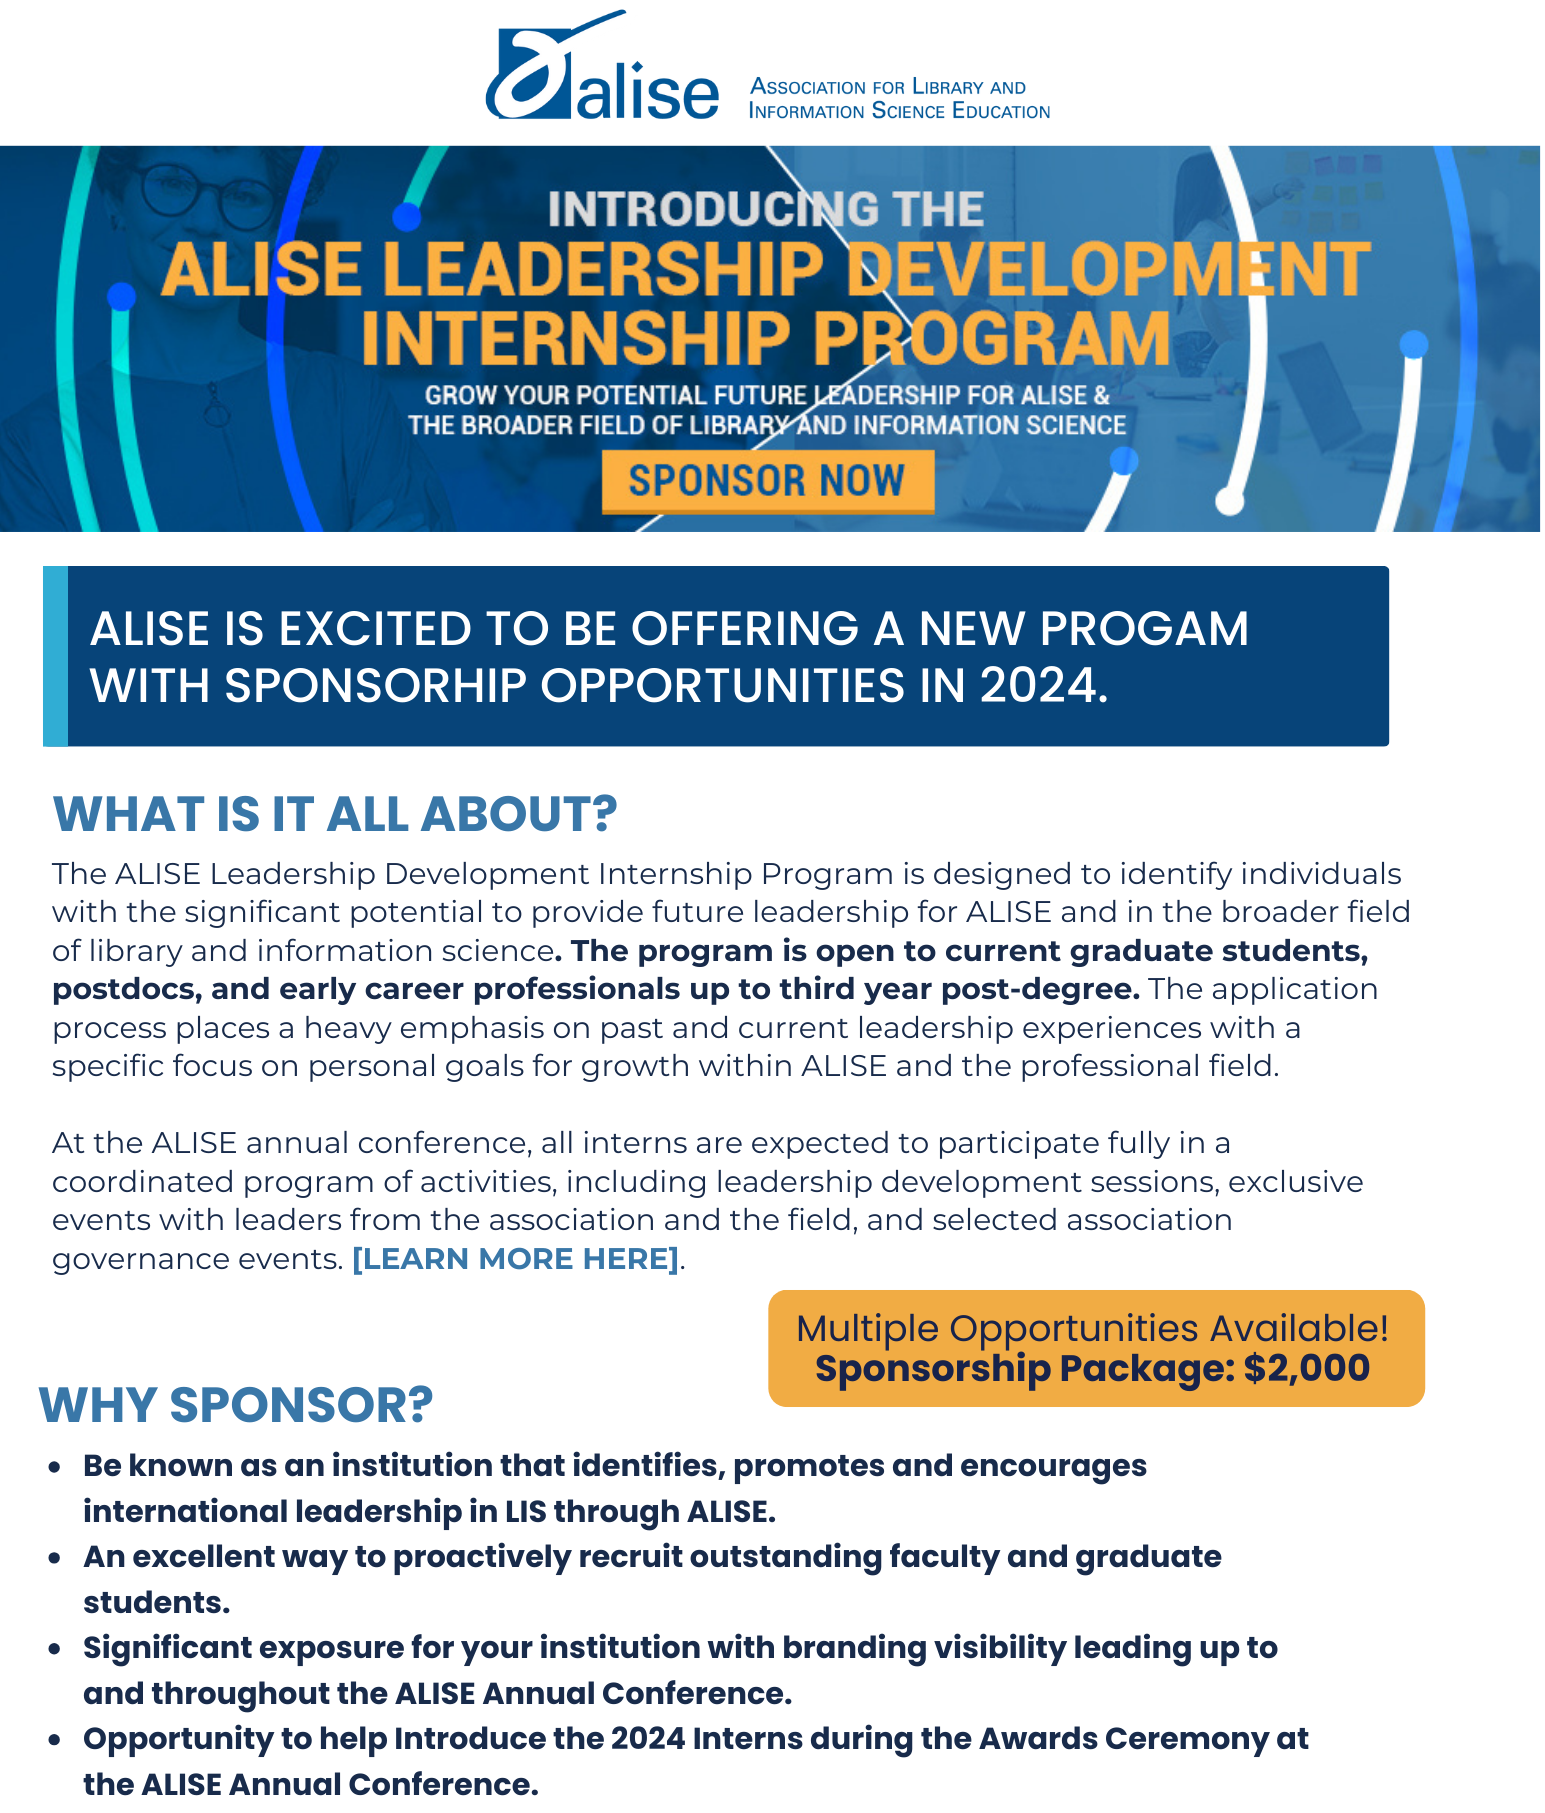 ALISE Leadership Development Internship Sponsorship Opportunities